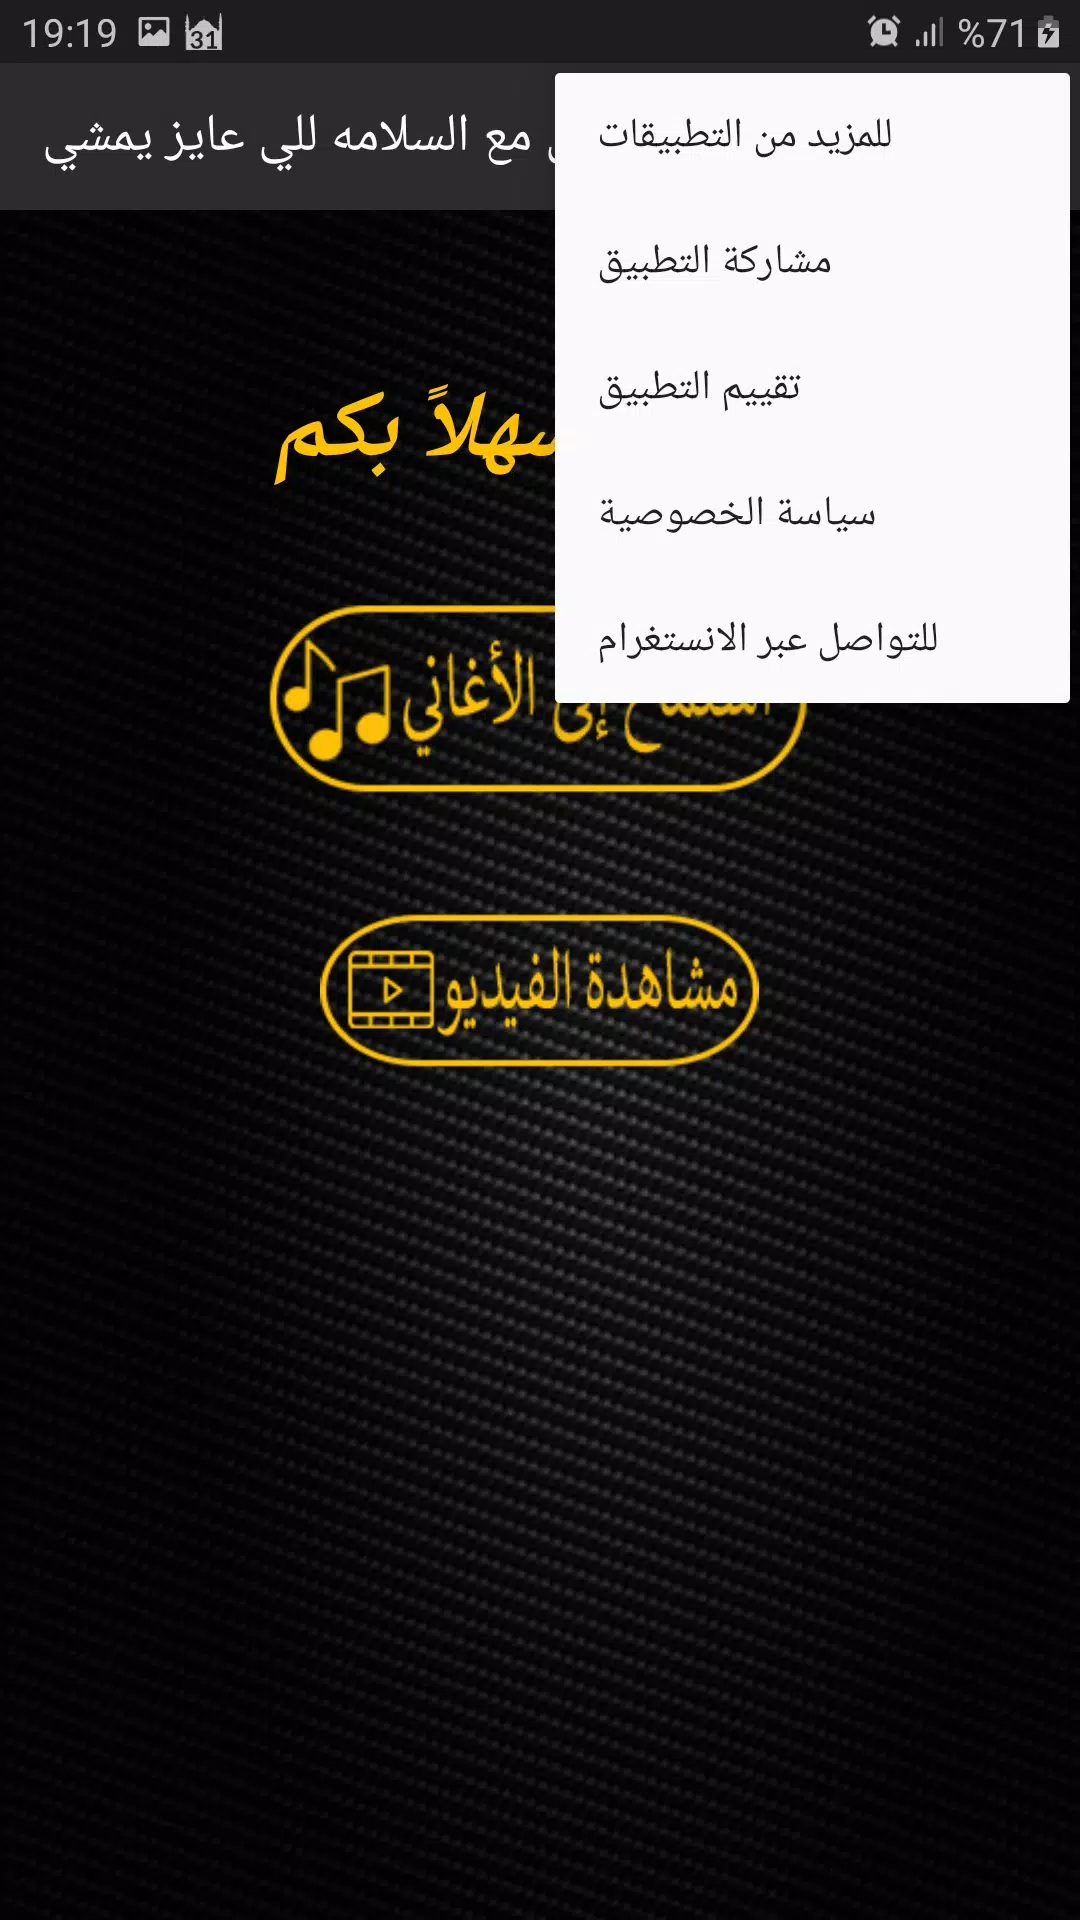 مهرجان مع السلامه للي عايز يمشي APK for Android Download